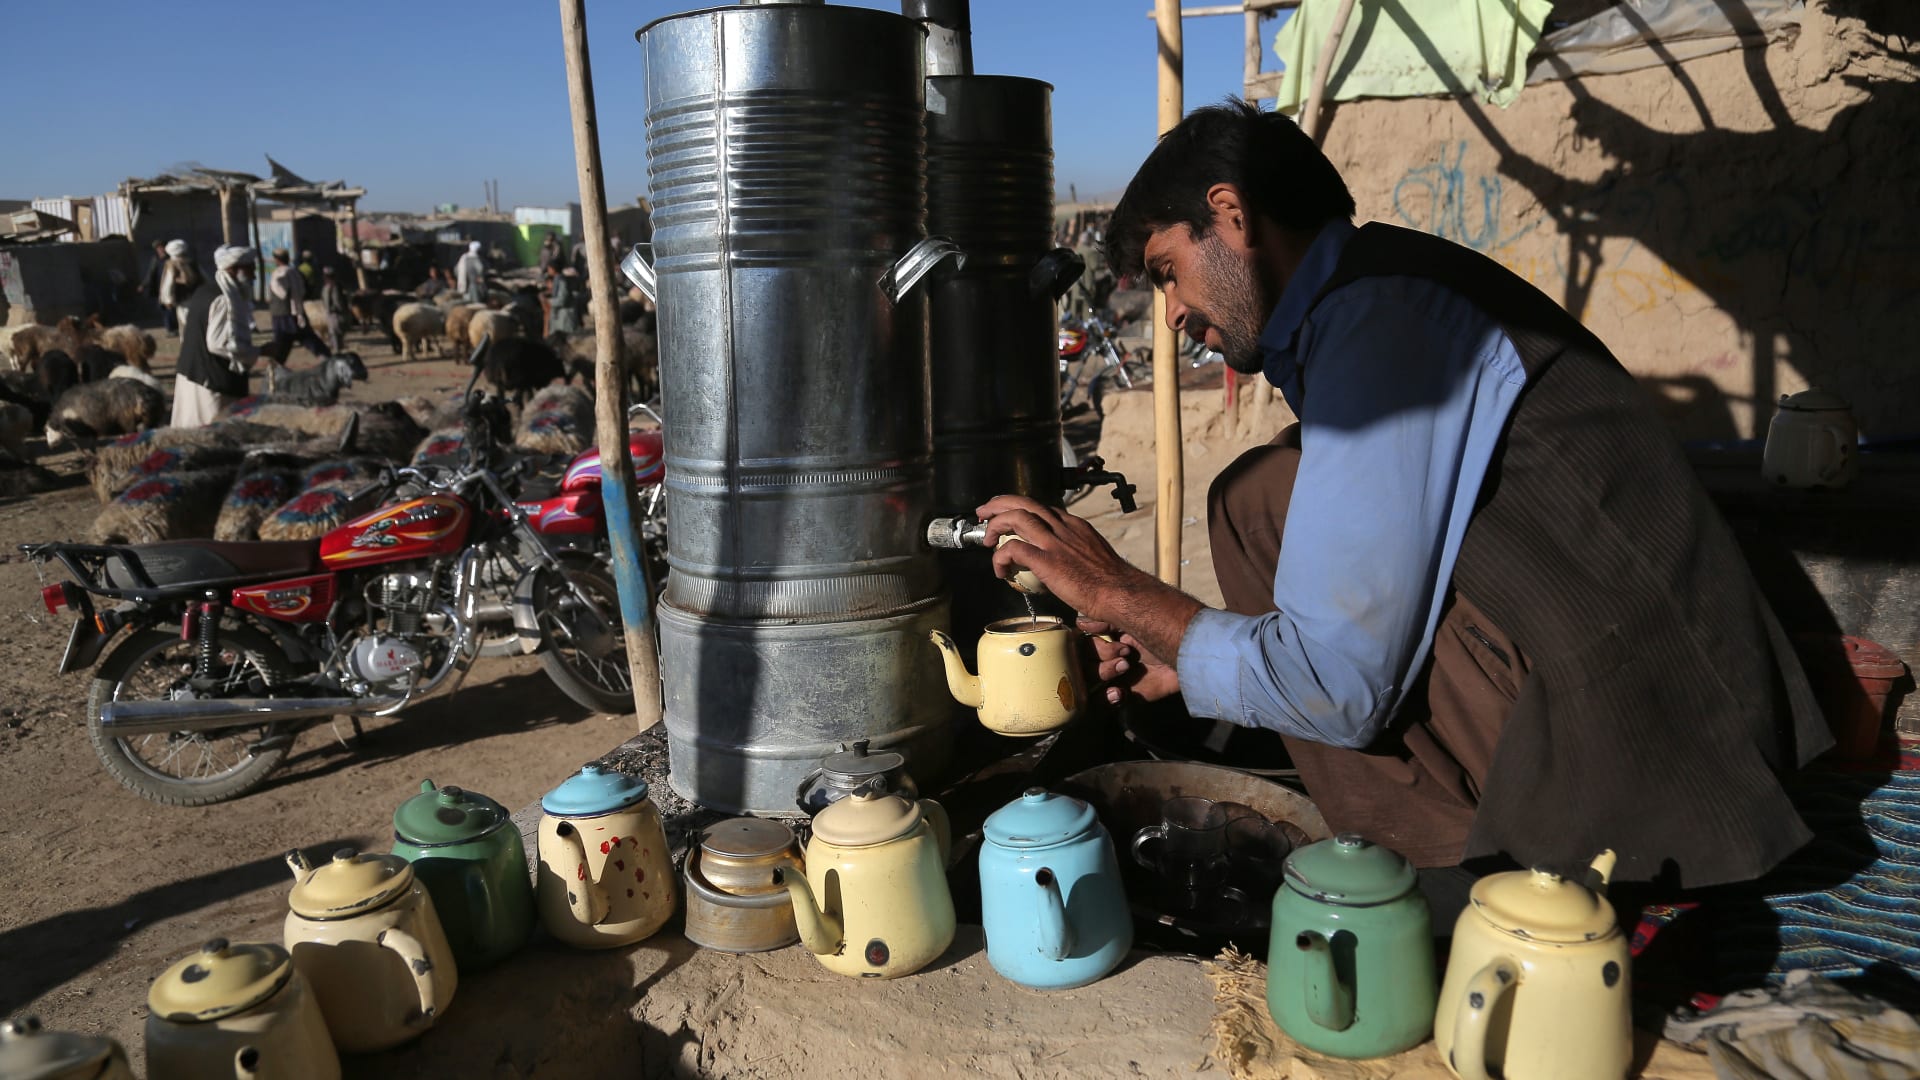 أفغاني يحضر الشاي لزوار سوق المواشي في كابول بأفغانستان